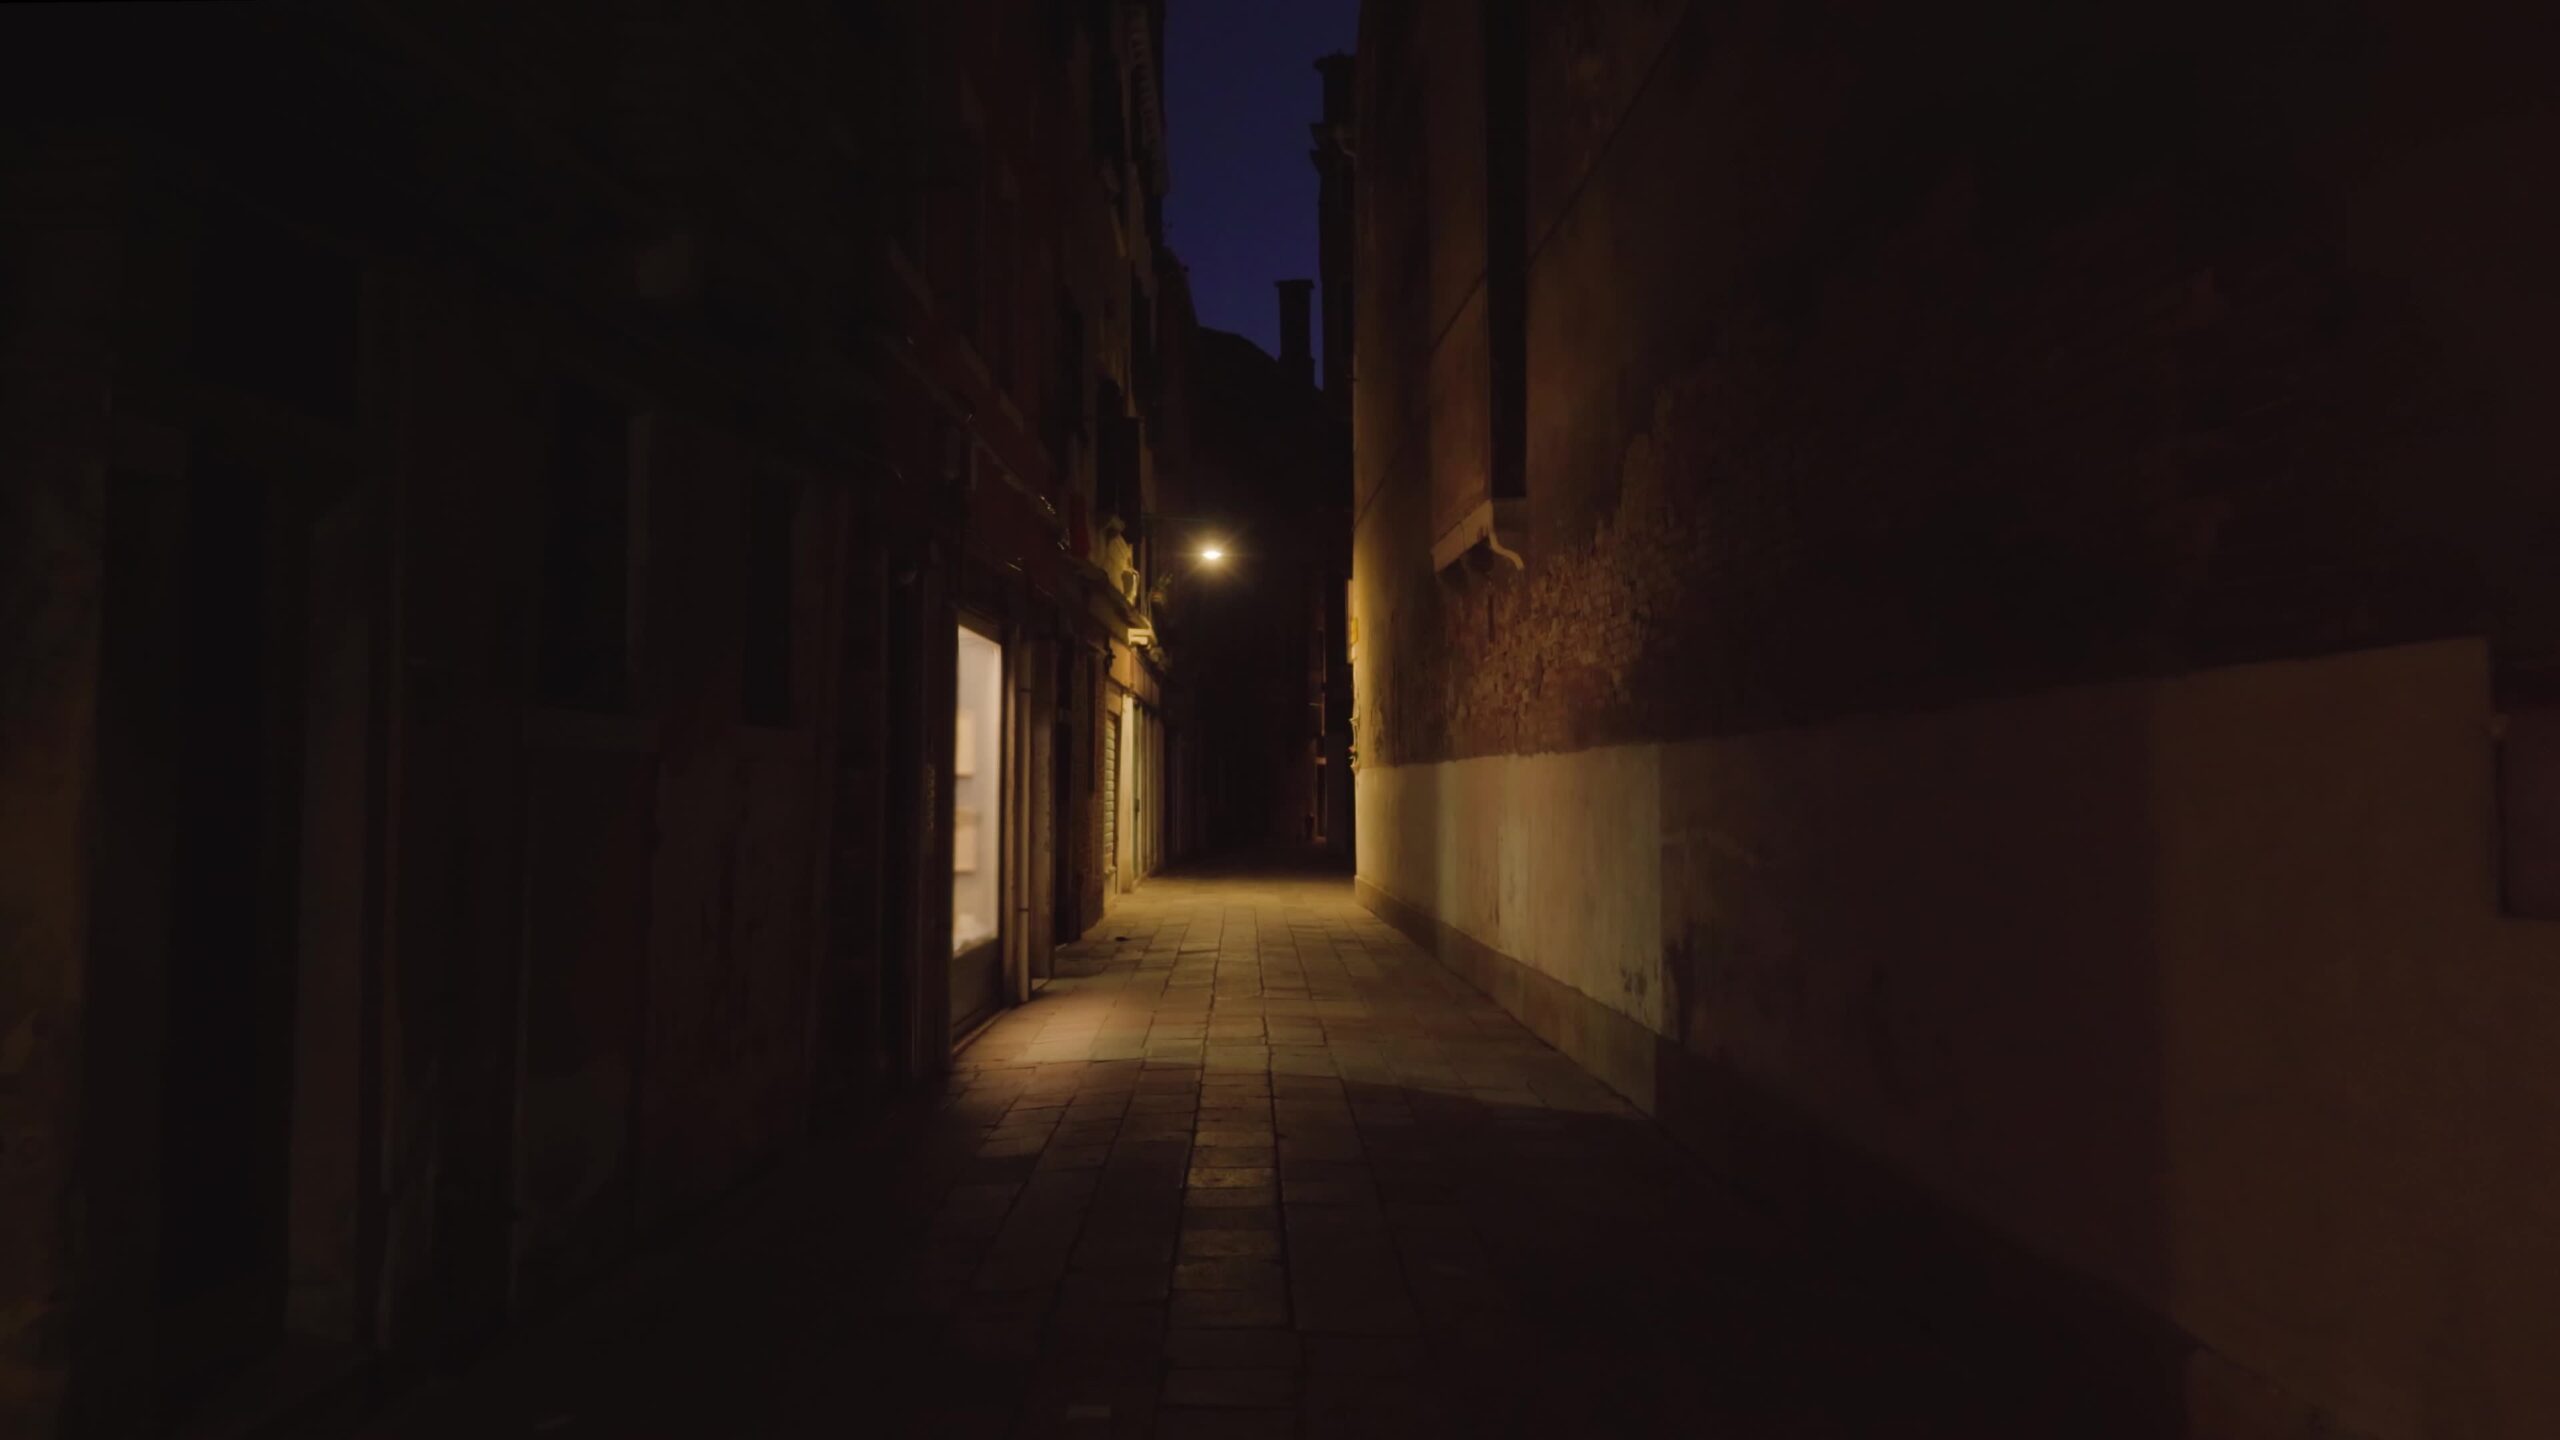 Strada vuota scura lunga e stretta illuminata da finestra e lampada